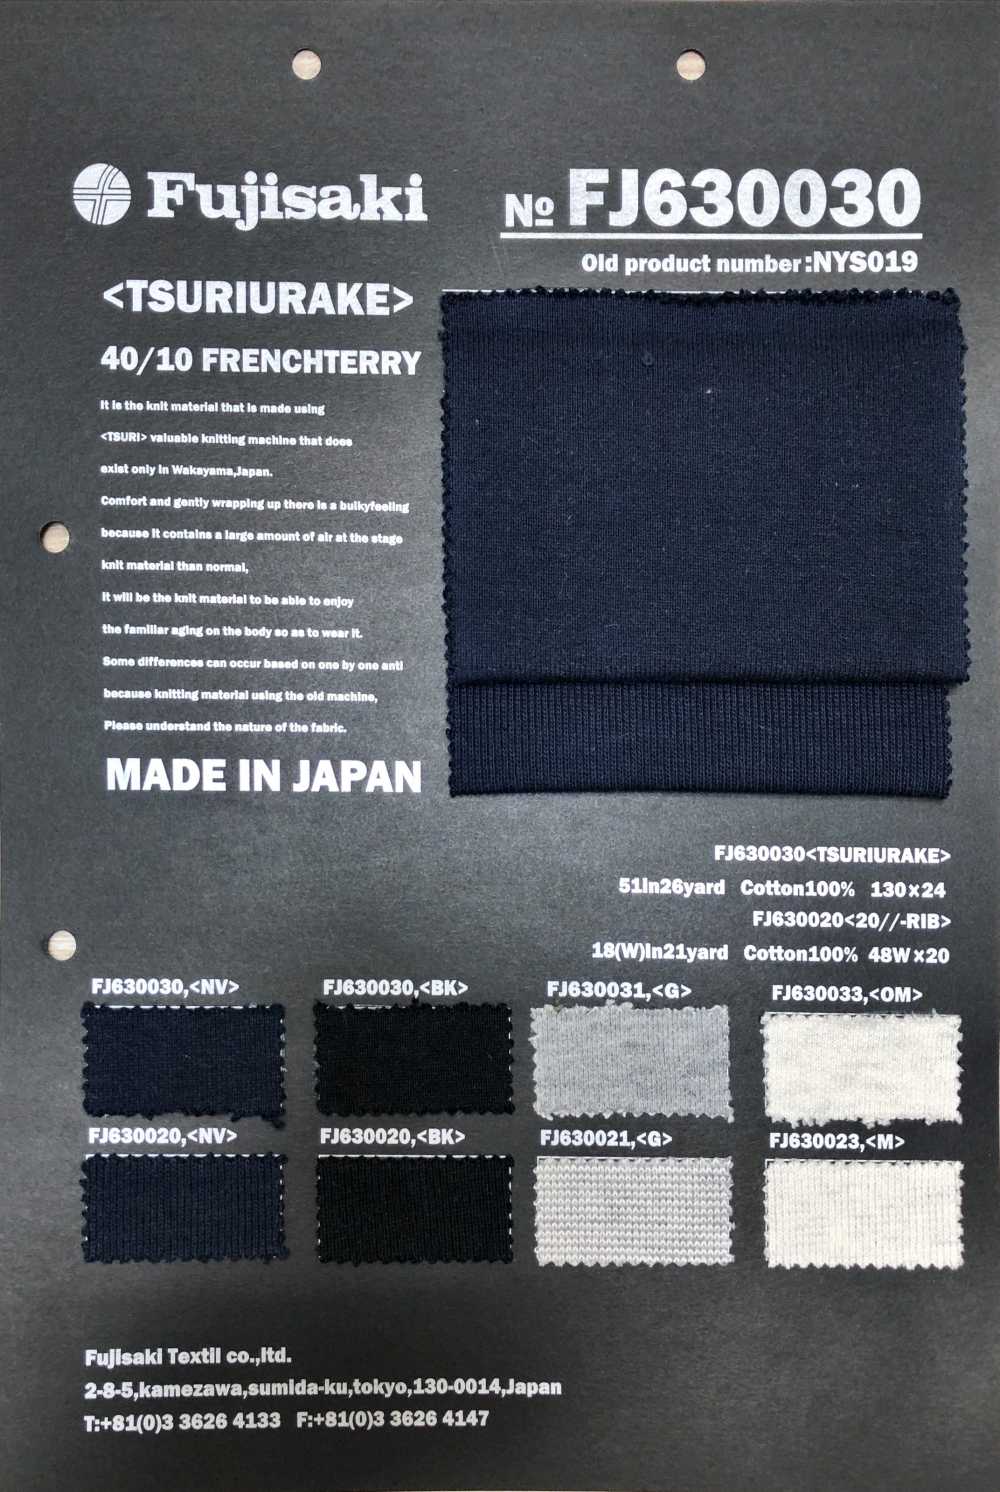 FJ630021 20//-针织罗纹石南花[面料] Fujisaki Textile